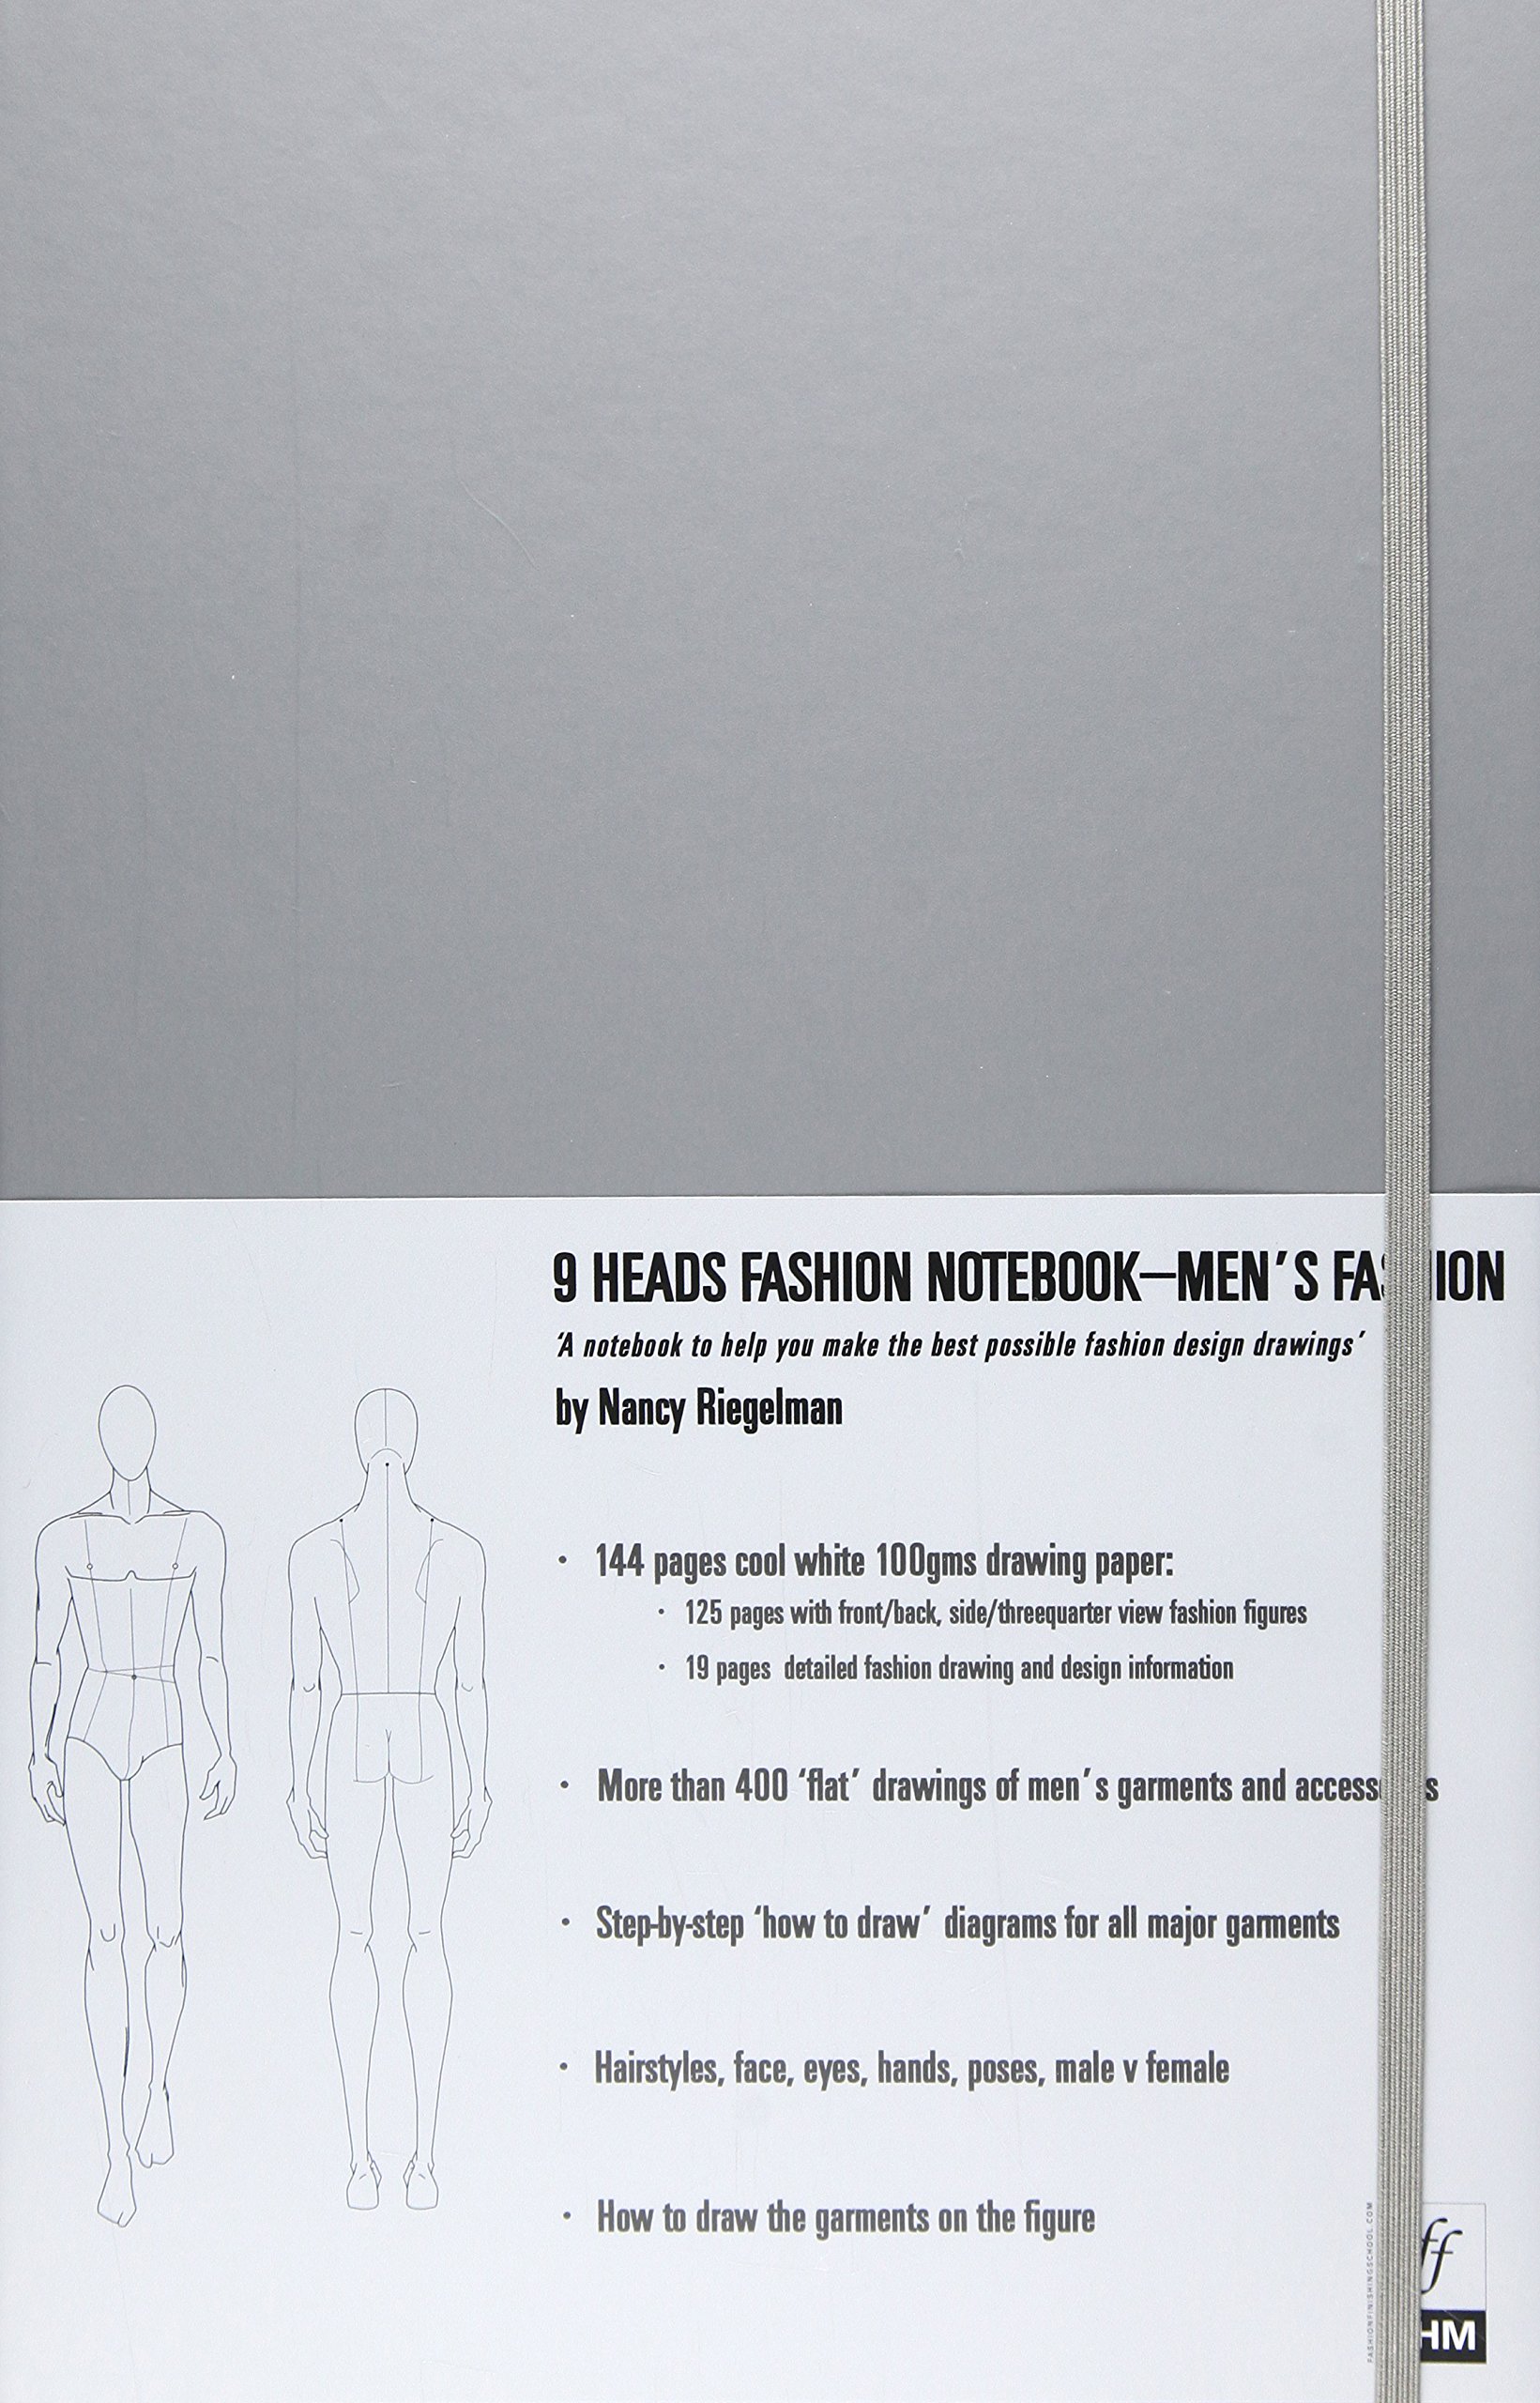 9 Heads Fashion Notebook: Men